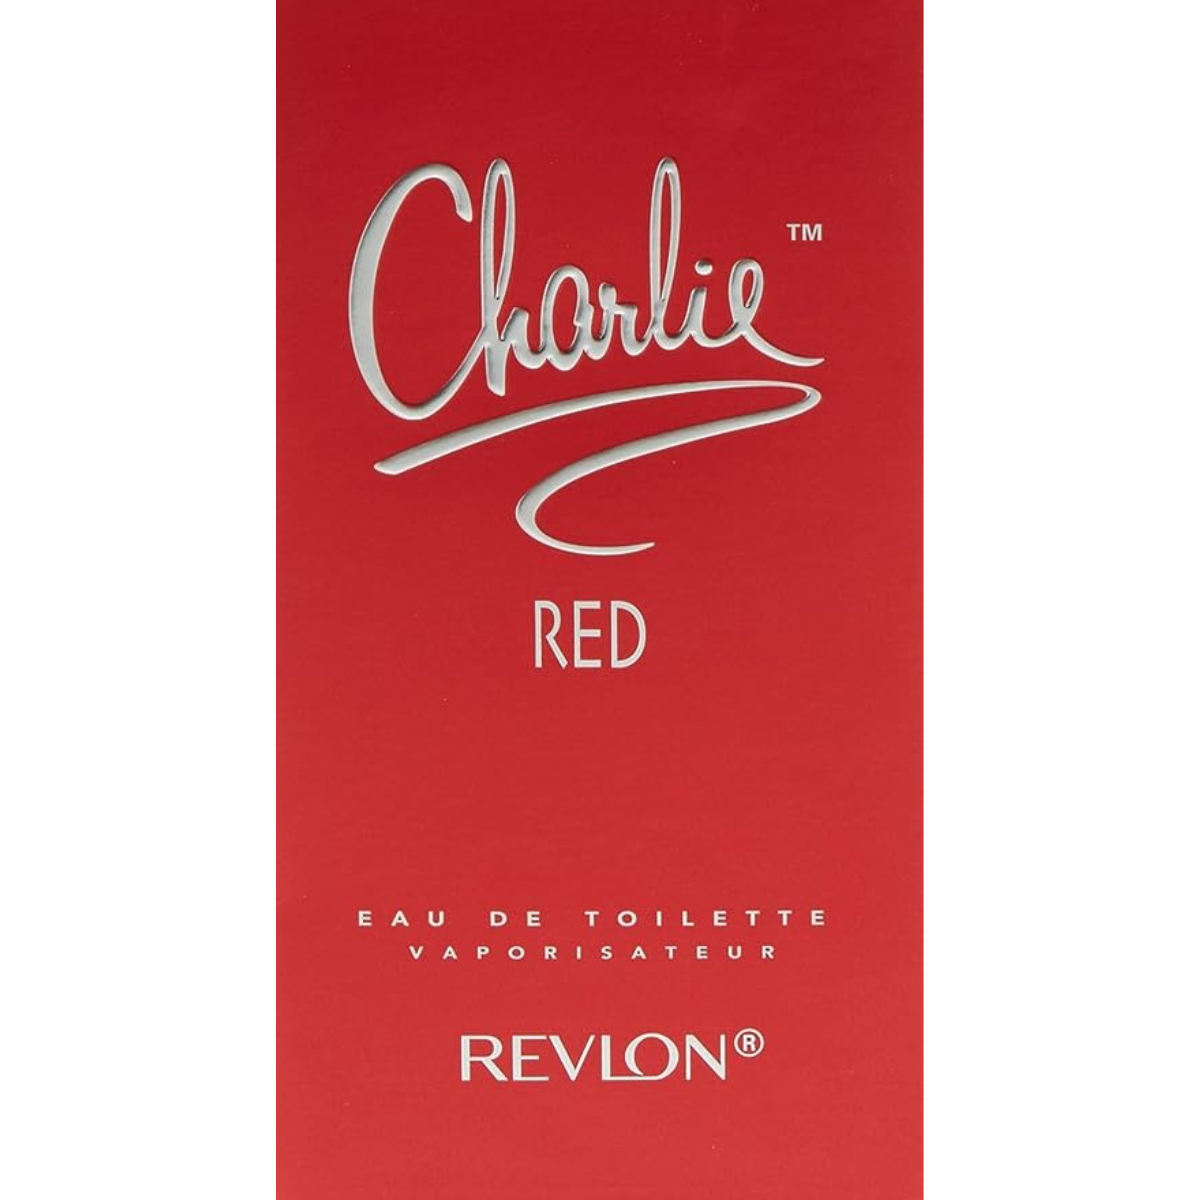 Revlon Charlie Red 100 ml EDT for women perfume